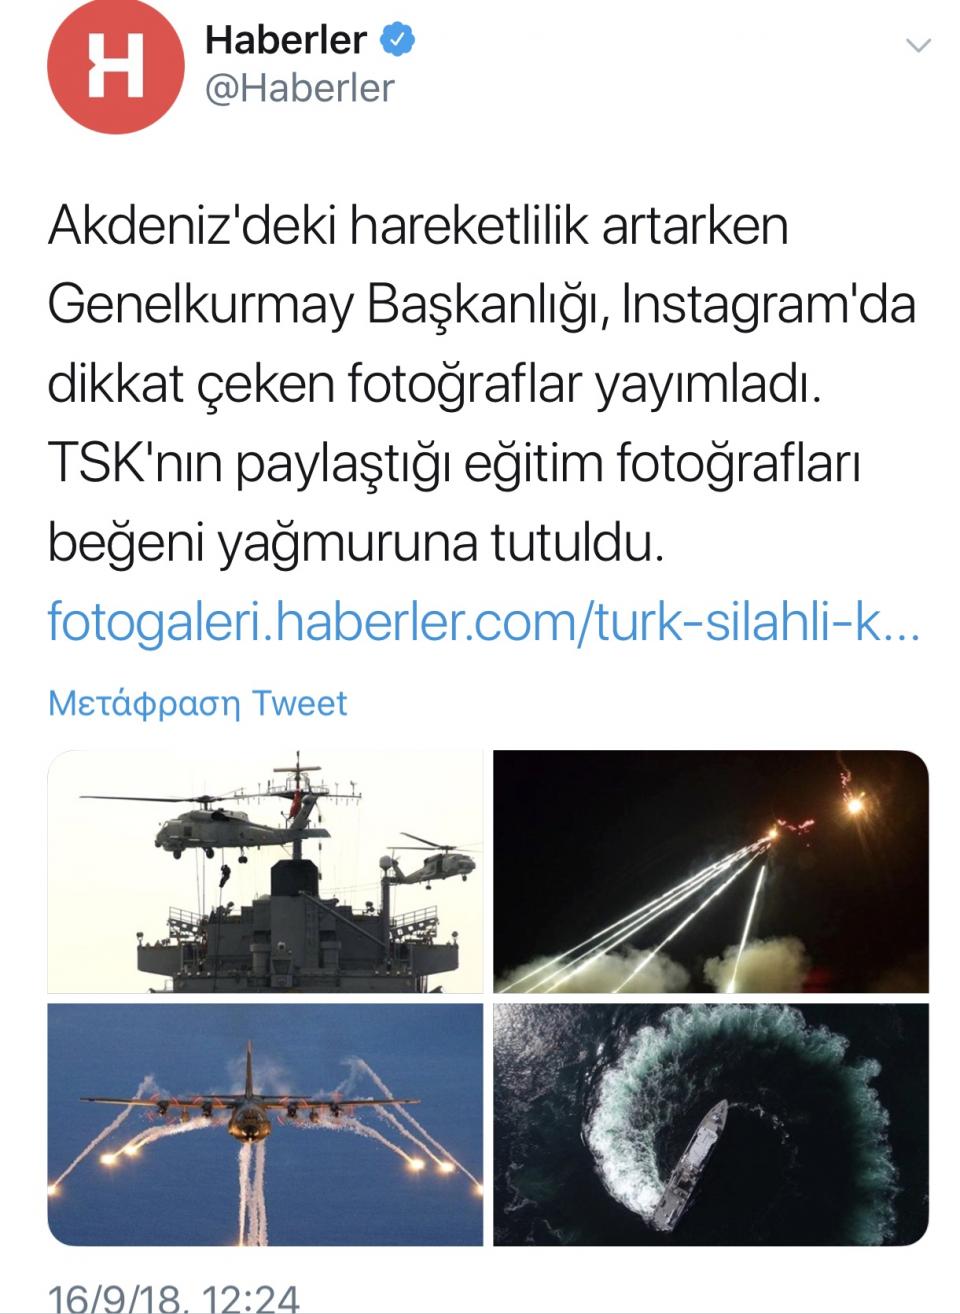 Επίδειξη δύναμης από Τούρκους κομάντος στη ΝΑ Μεσόγειο- Μεγάλη συγκέντρωση τουρκικών ναυτικών δυνάμεων